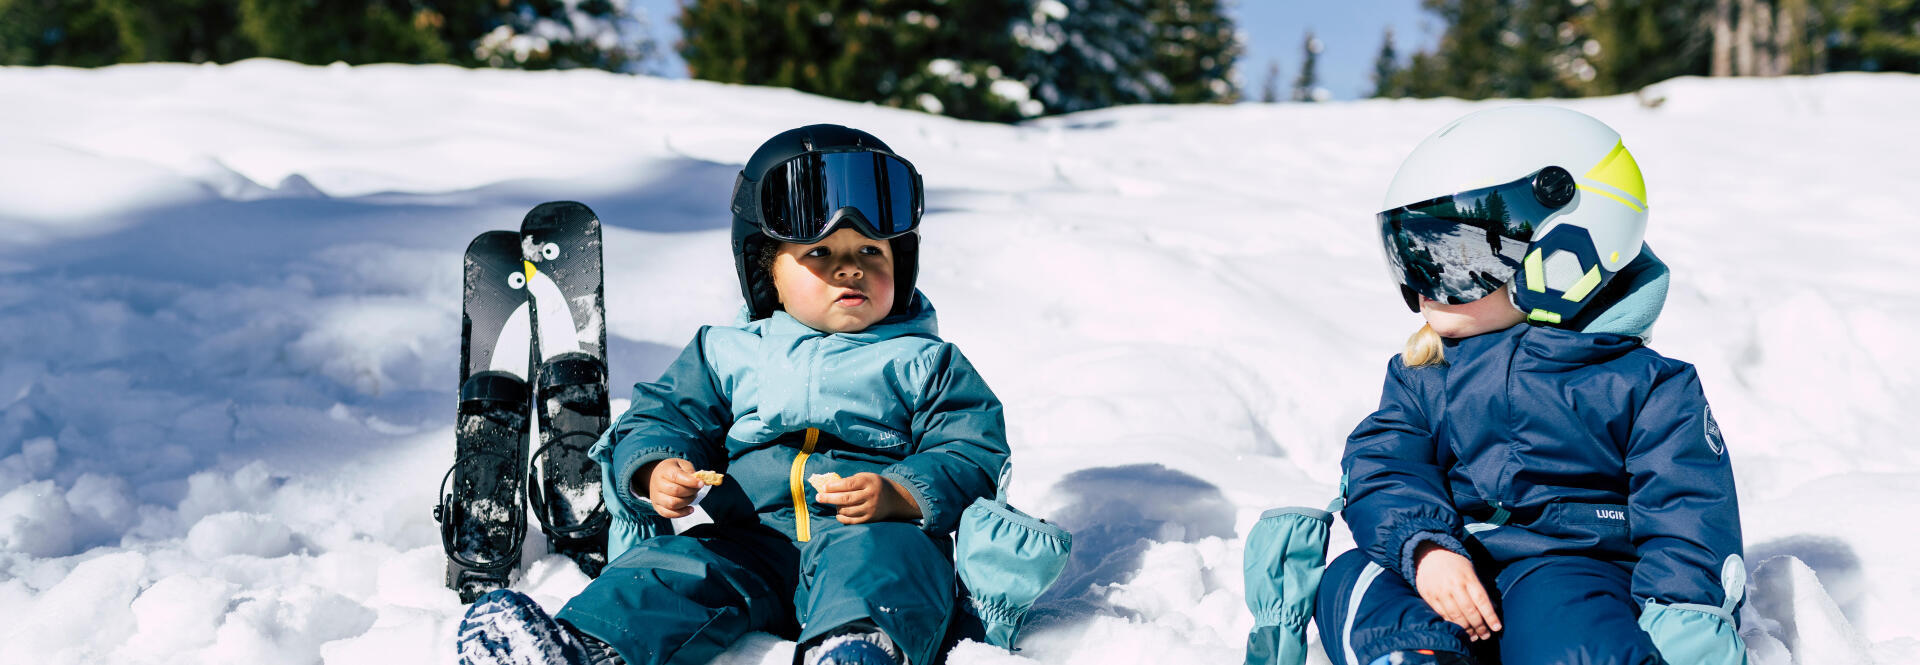 Comment bien habiller un enfant au ski ?